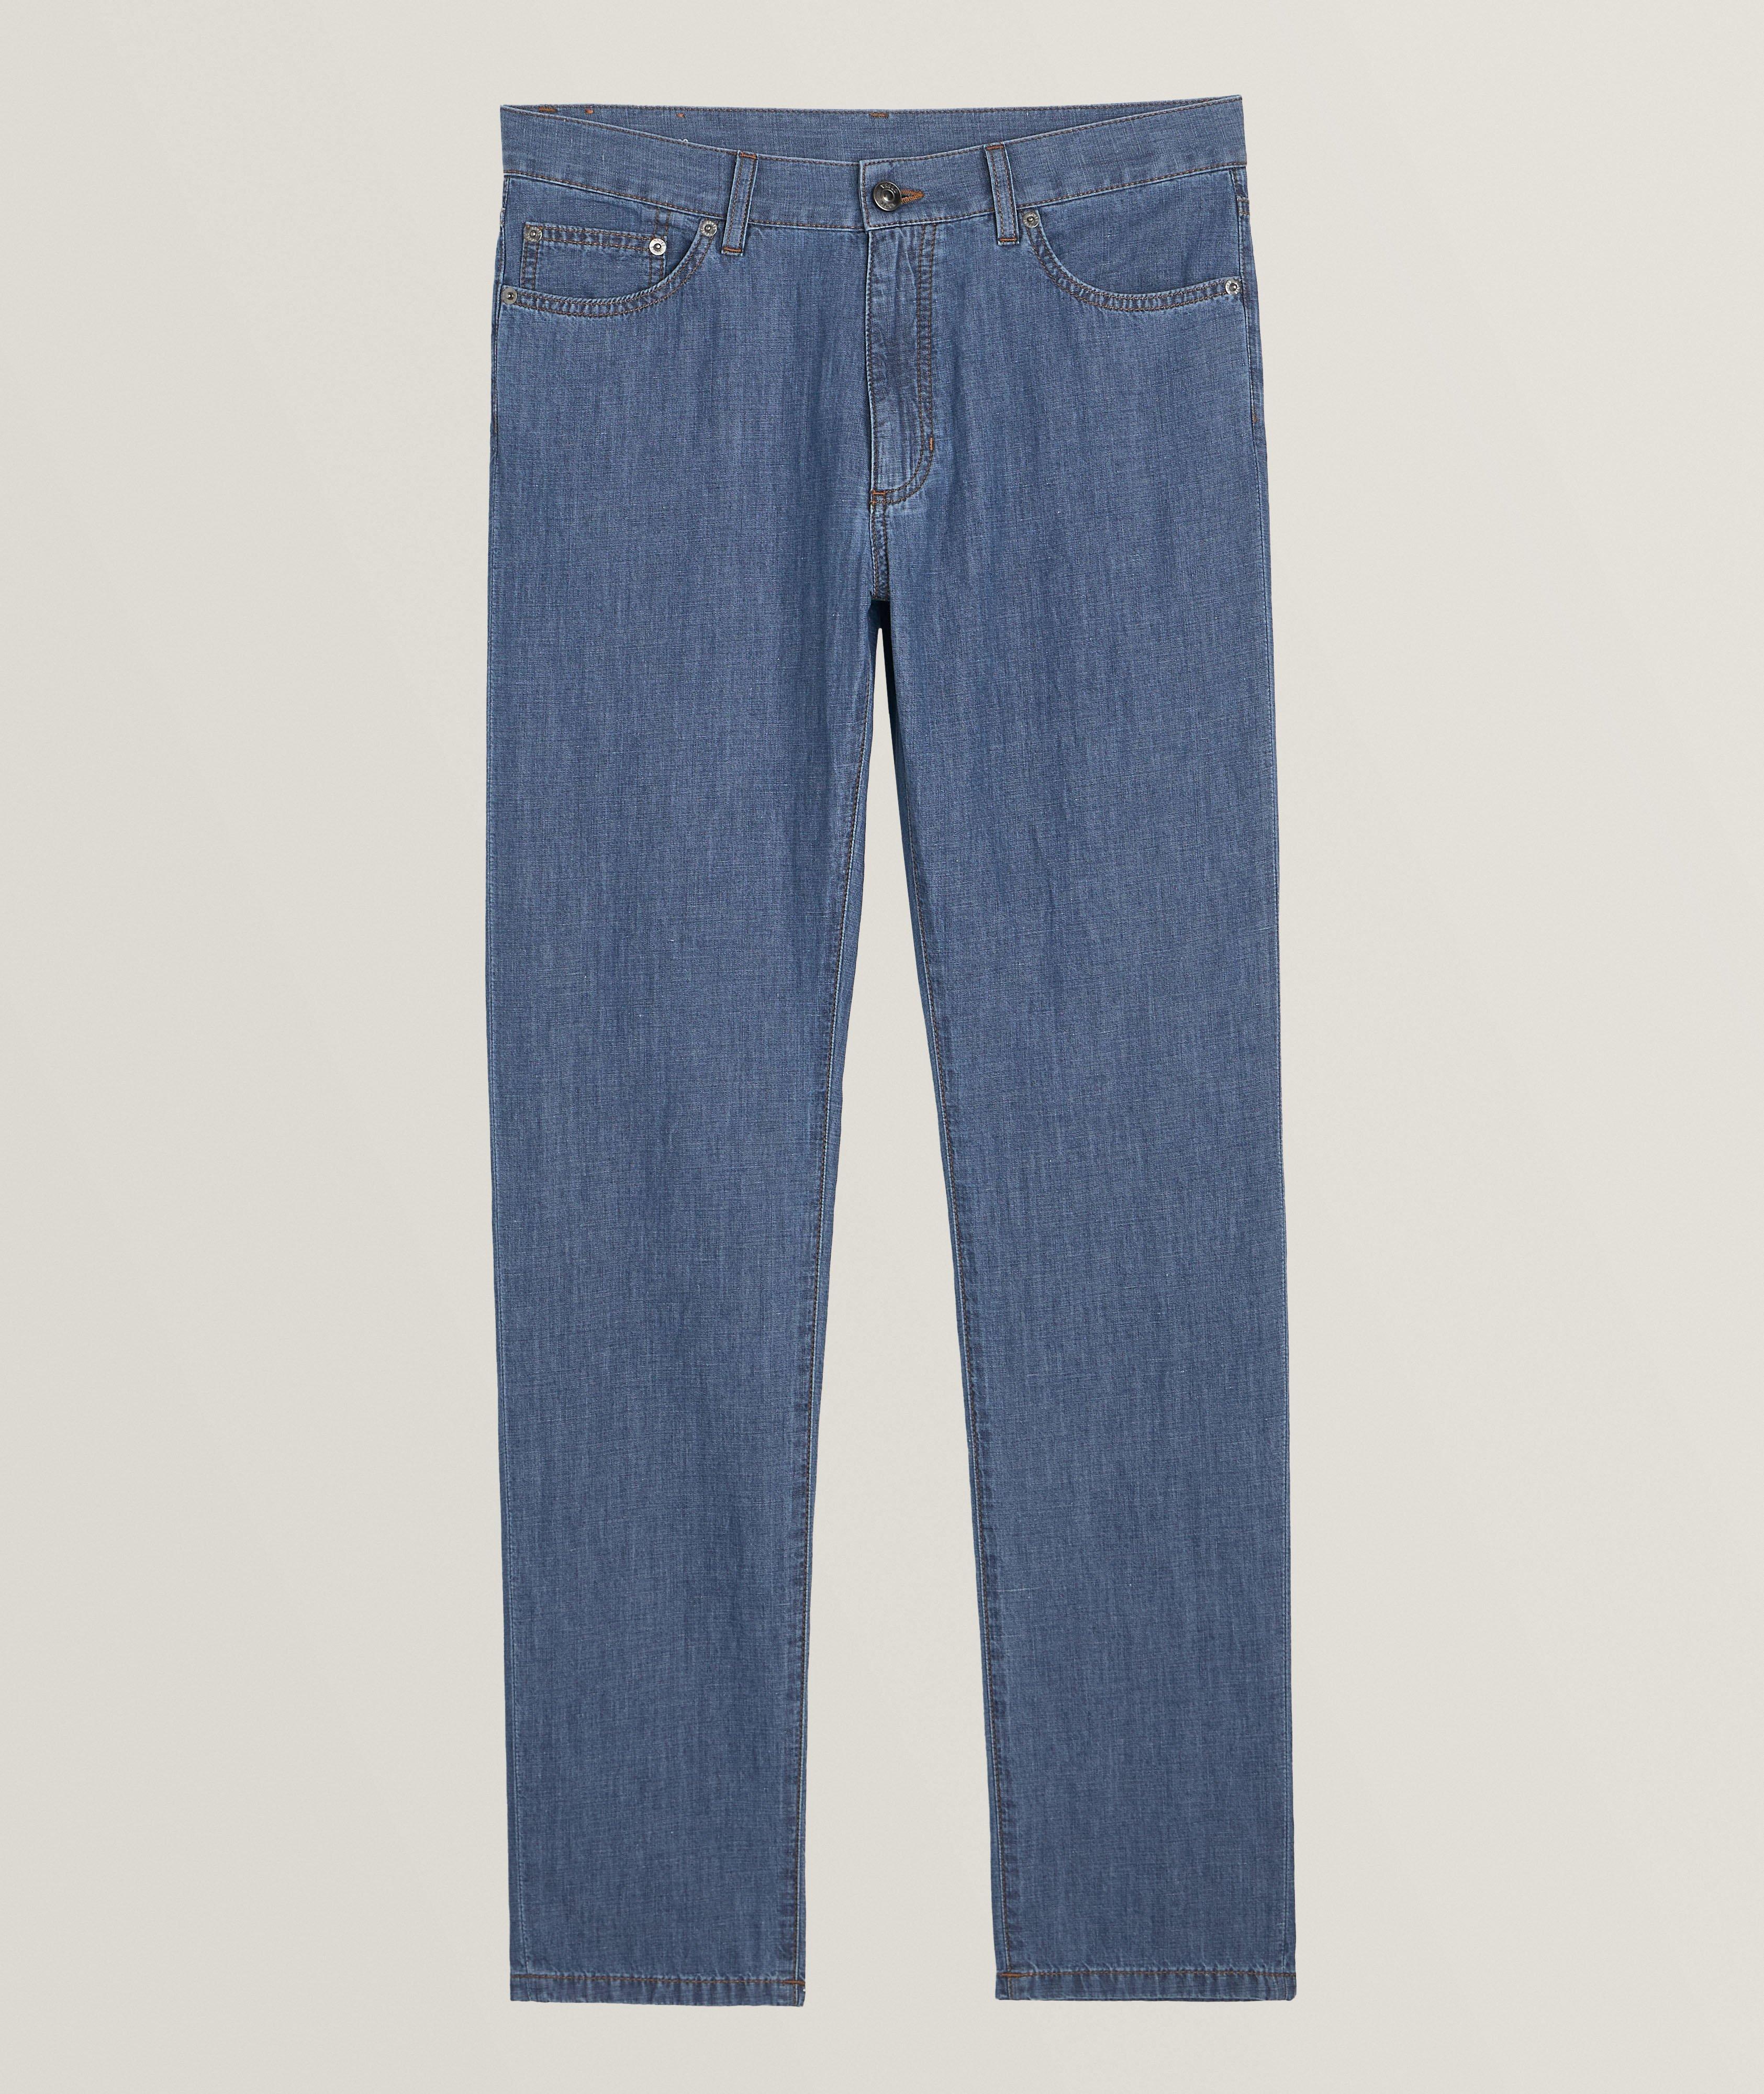 City Cotton-Linen Jeans  image 0